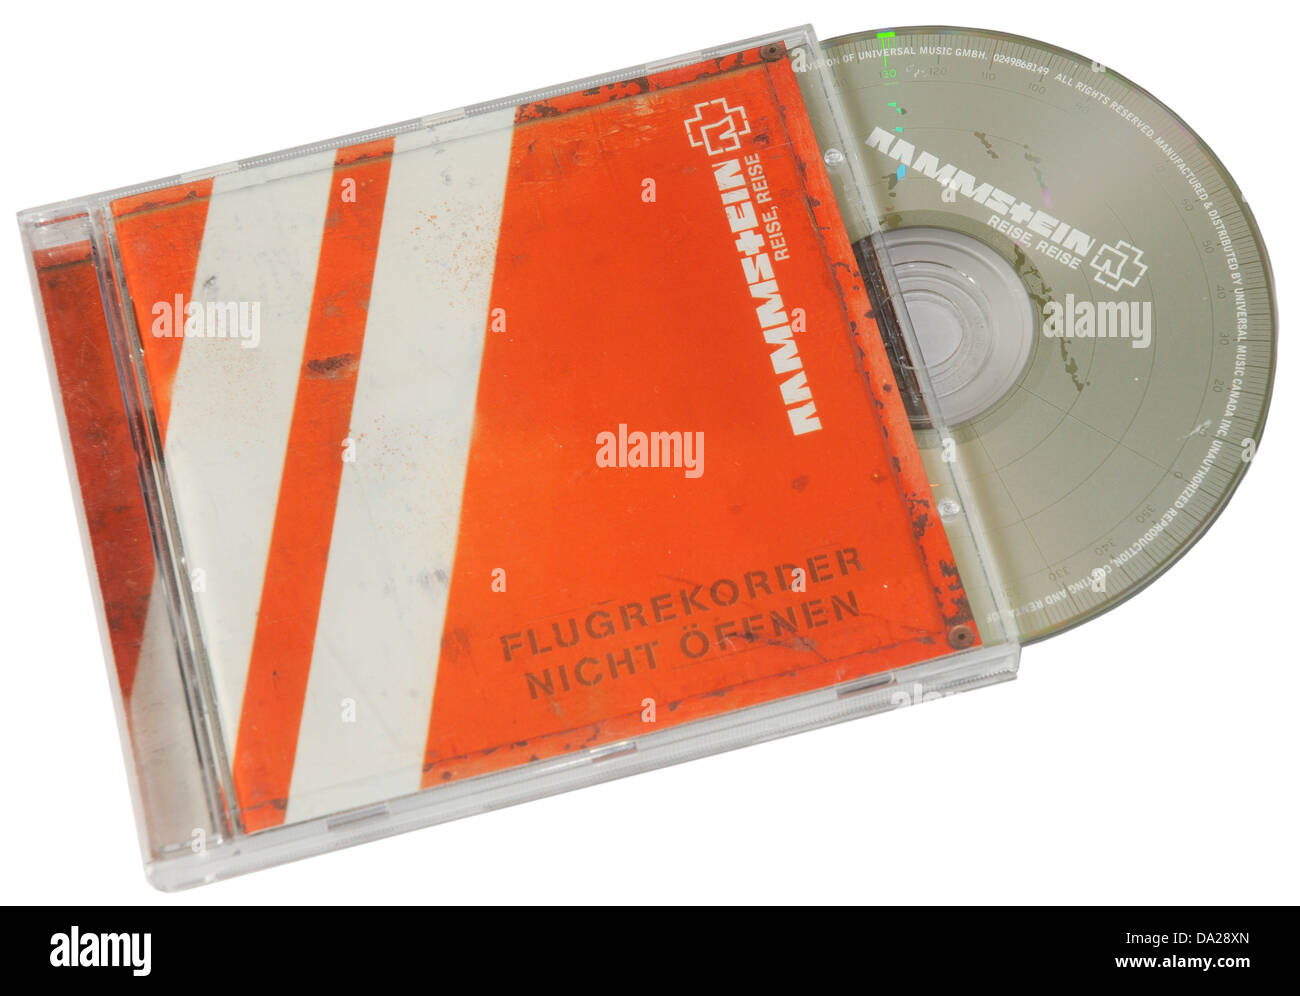 Rammstein Reise Reise álbum en CD Foto de stock